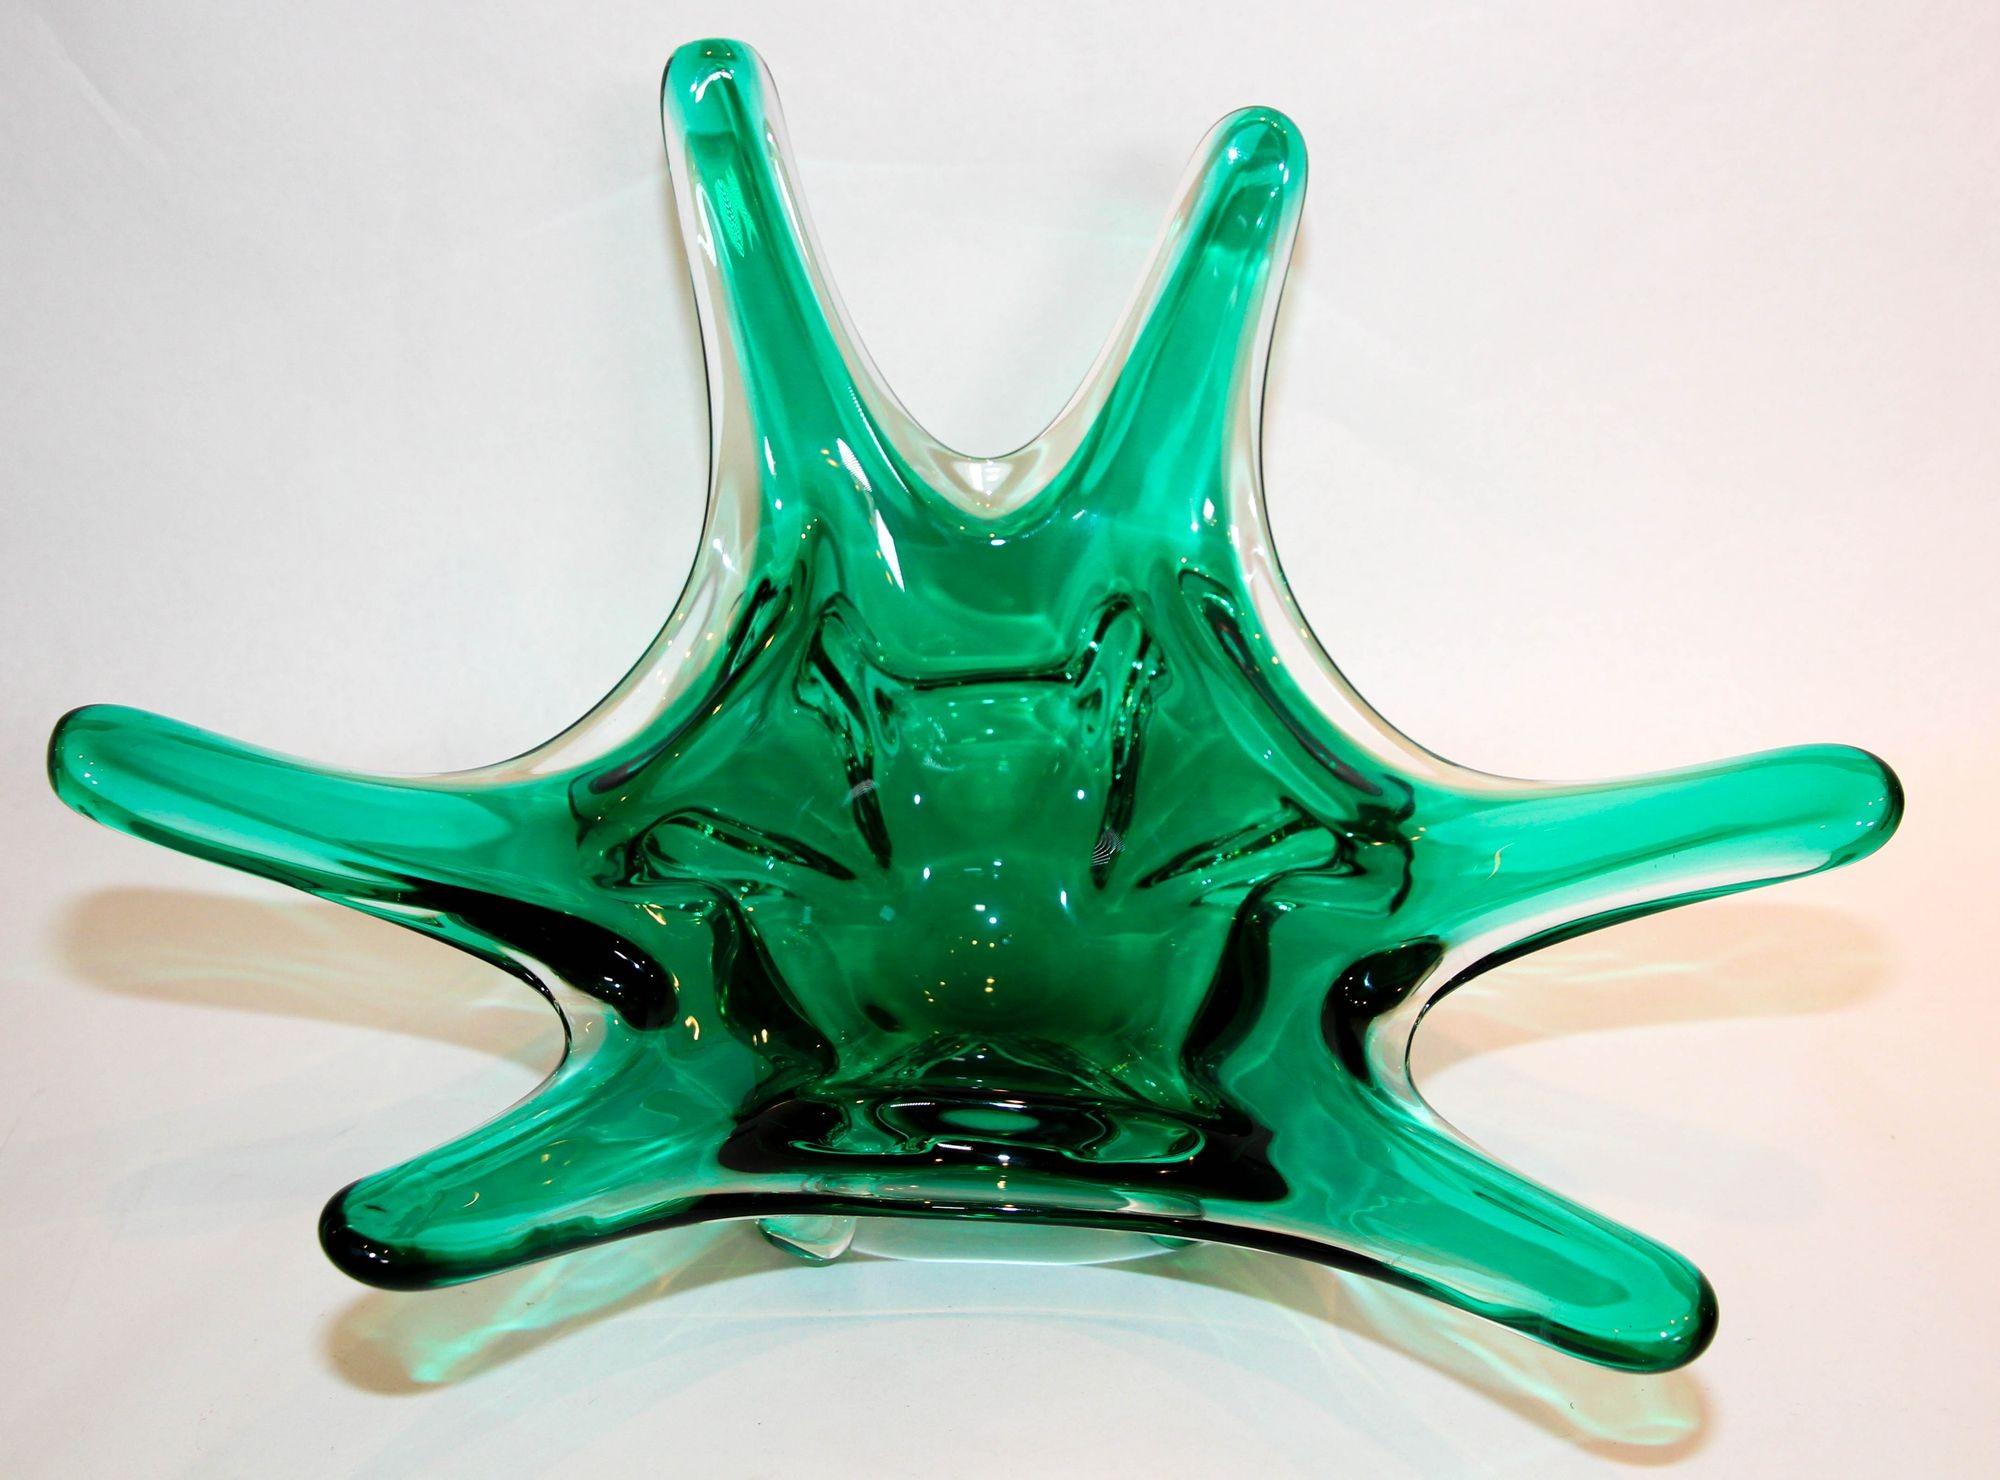 Vintage Mid-Century Modern Emerald Green Large Murano Italian Art Glass Bowl centerpiece circa 1950.
Magnifique bol soufflé à la main en verre d'art de Murano pour centre de table, très joyeux et décoratif.
Monumental et lourd beau bol en verre de